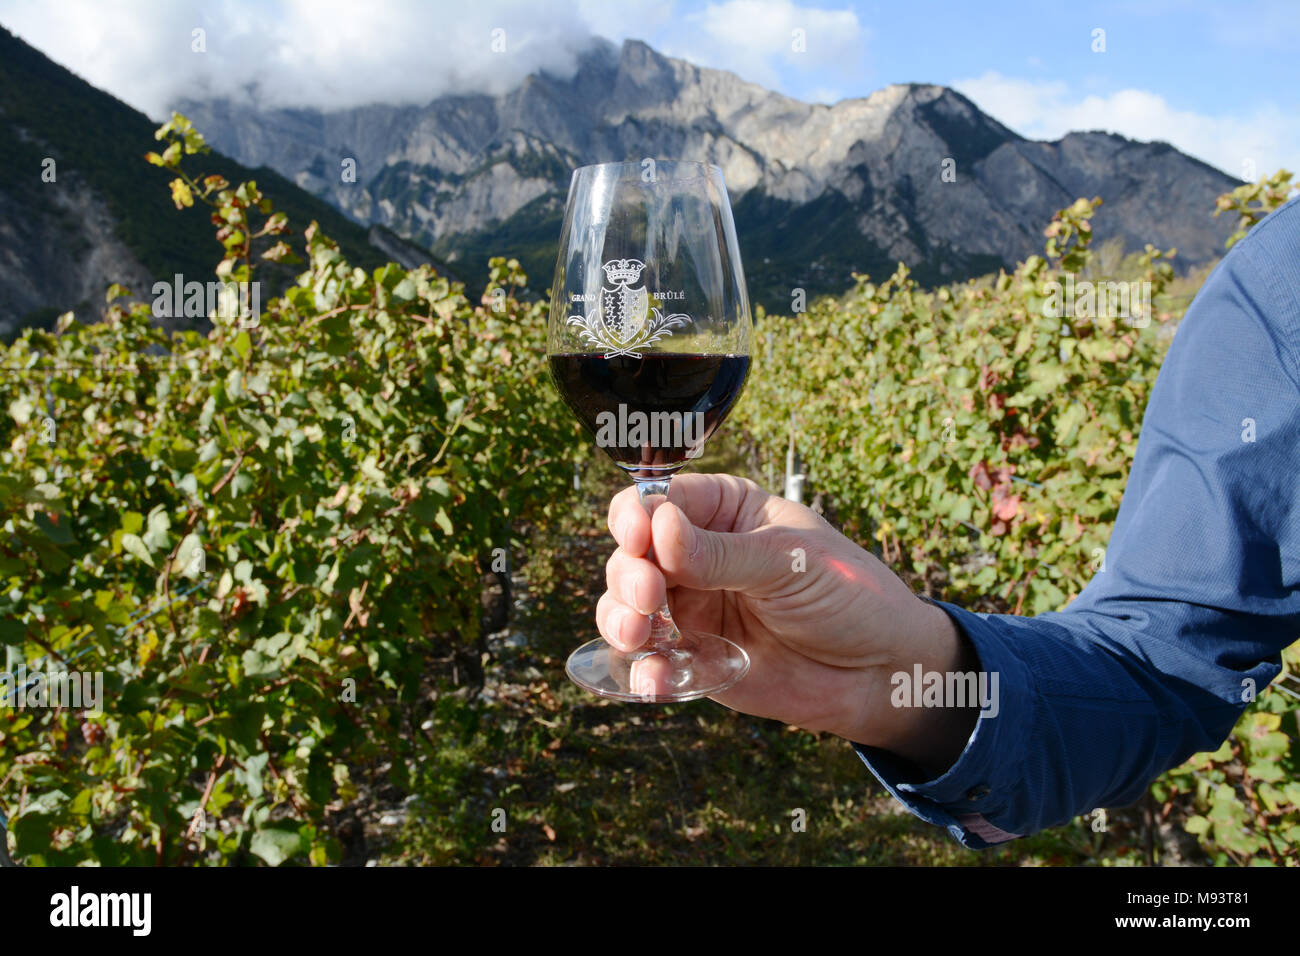 Ein Schweizer Winzer in einem Weinberg in der Nähe von Chamoson Holding ein Glas  Rotwein Cornalin, hergestellt aus Trauben in der Region Wallis in der  Schweiz gewachsen Stockfotografie - Alamy